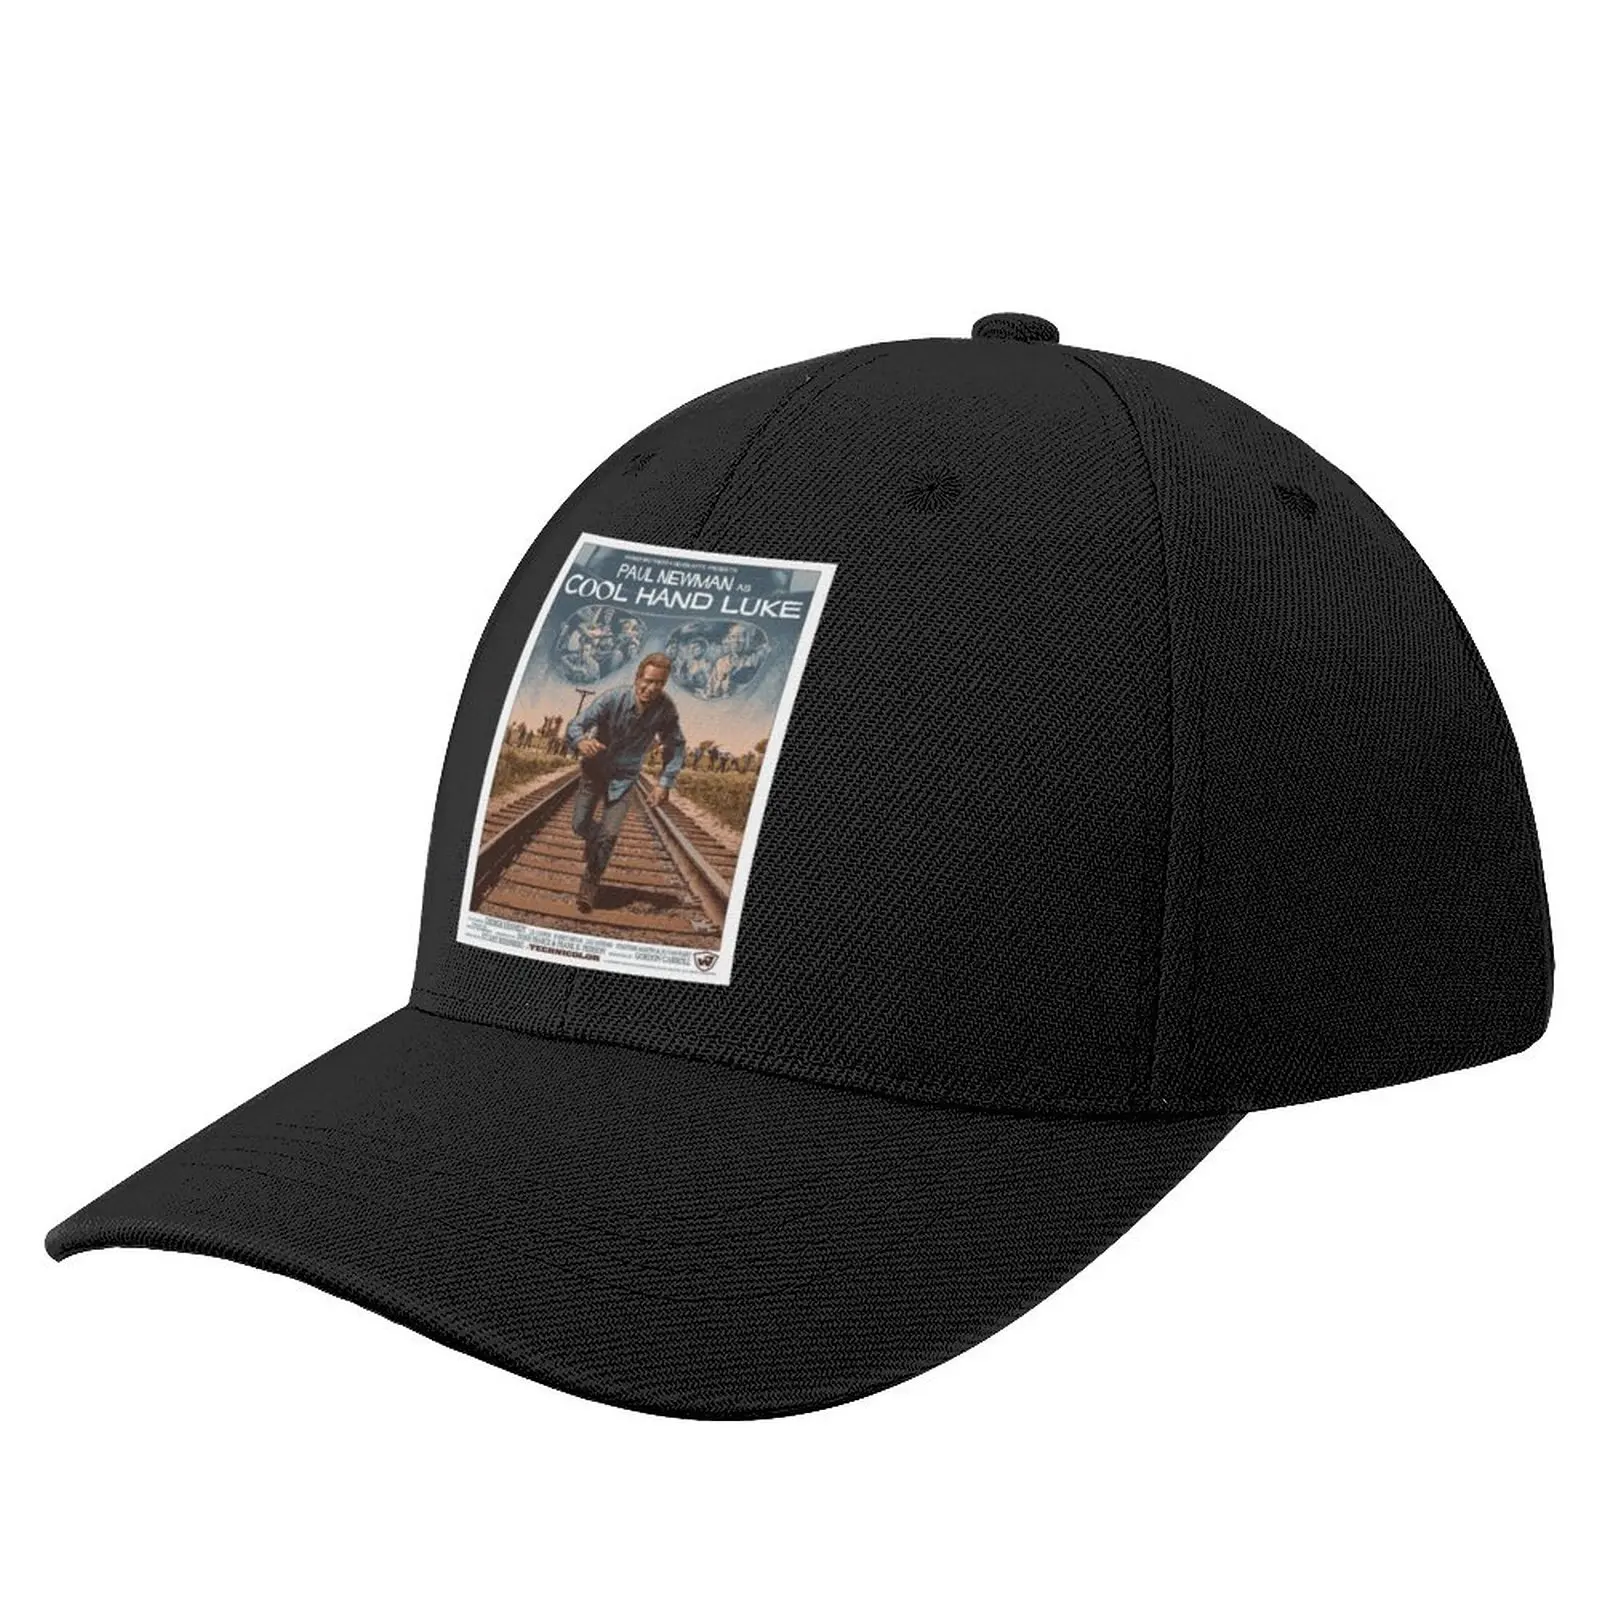 

COOL HAND LUKE MOVIE Baseball Cap Golf Wear Snapback Cap Hat Male Women's